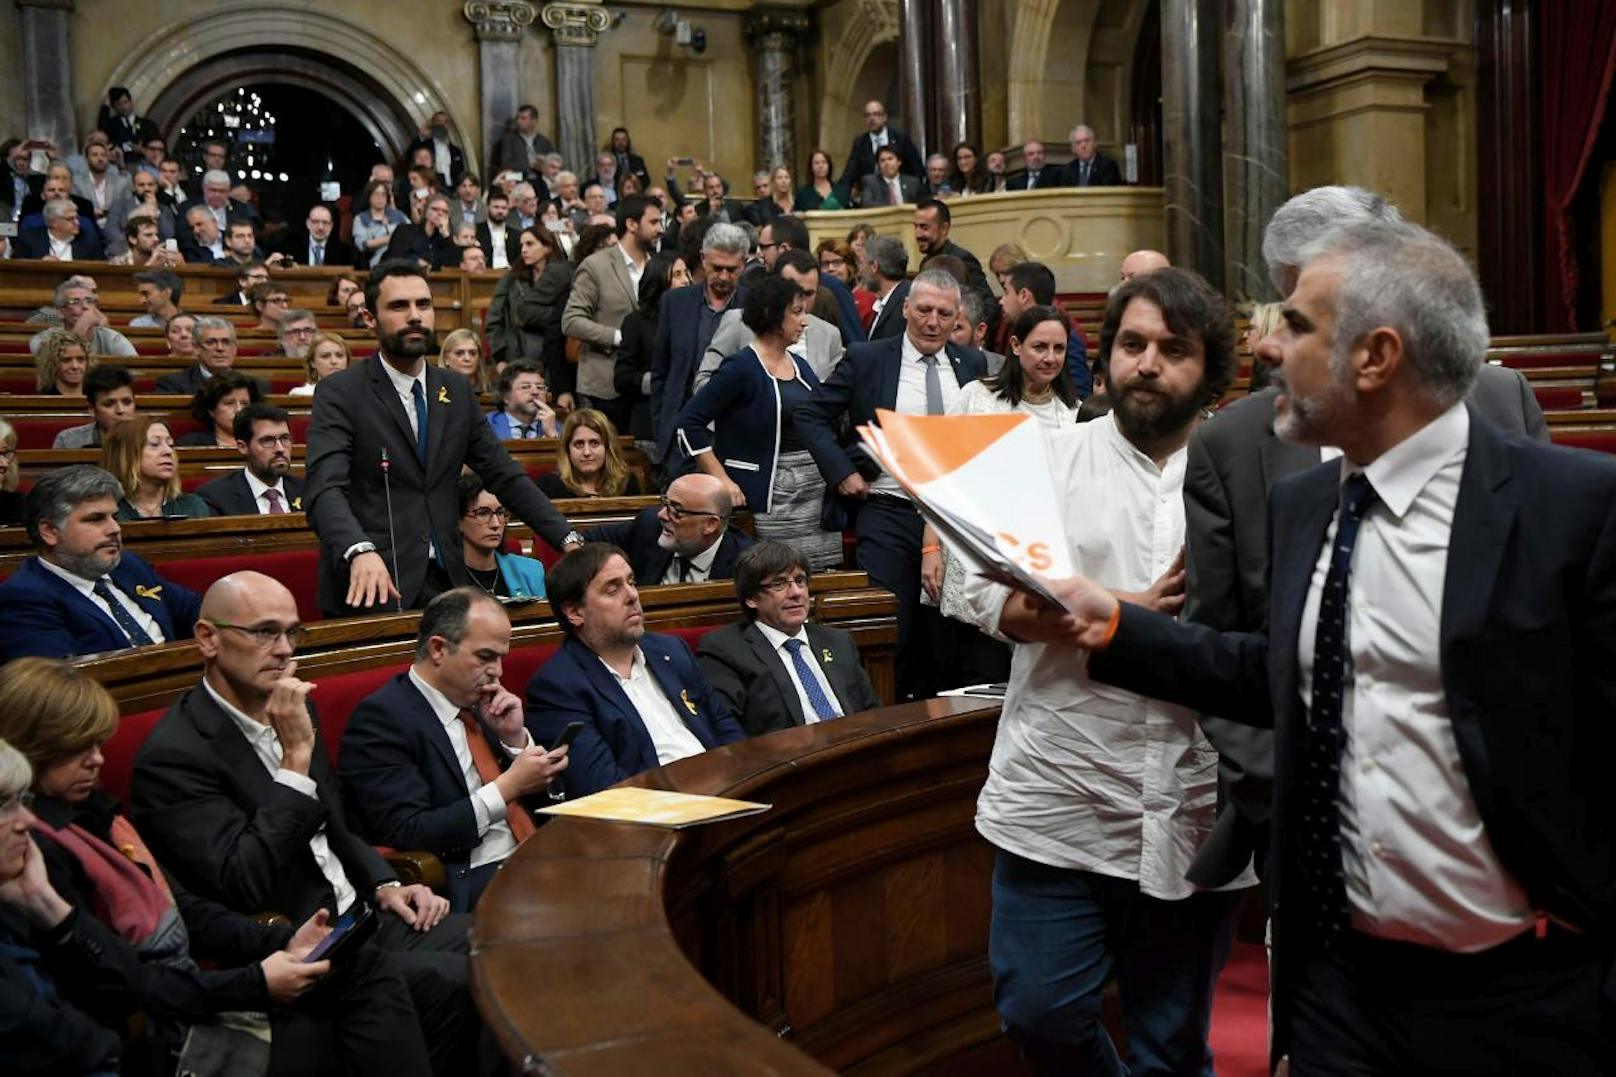 Carlos Carrizosa (rechts im Bild) von der Partei Ciudadanos und seine Anhänger verließen vor der Abstimmung den Sitzungssaal, sie boykottierten das Votum. Insgesamt gaben nur 92 von 135 Parlamentarier ihre Stimme ab.